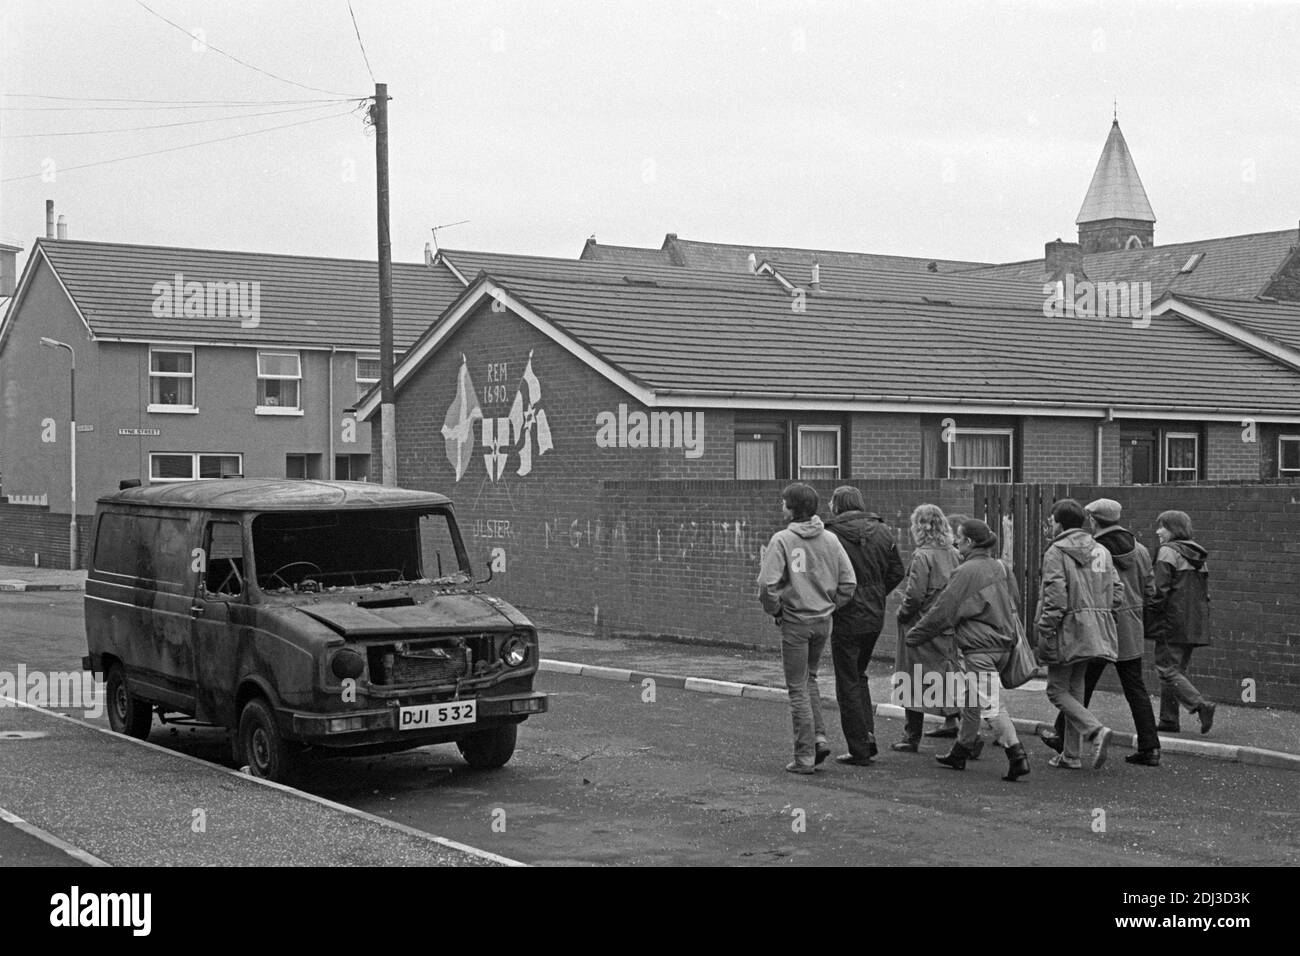 Ausgebrannter Van auf einer Straße, protestantisches Wohngebiet, historisches Foto, Carlow Street, April 1986, Belfast, Nordirland Stockfoto